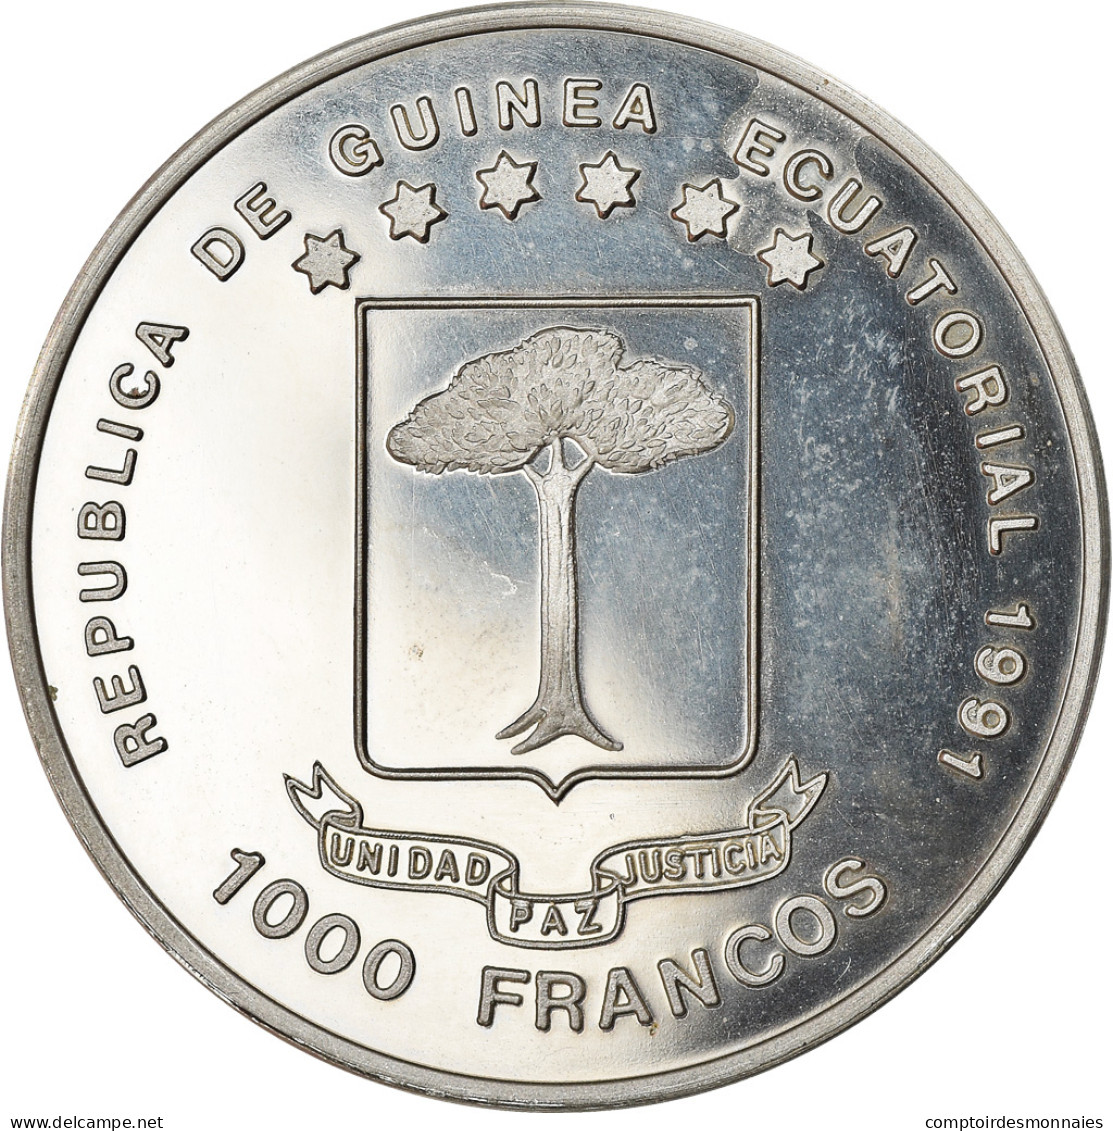 Monnaie, Equatorial Guinea, 1000 Francos, 1991, Proof, SPL, Copper-nickel, KM:68 - Guinée Equatoriale